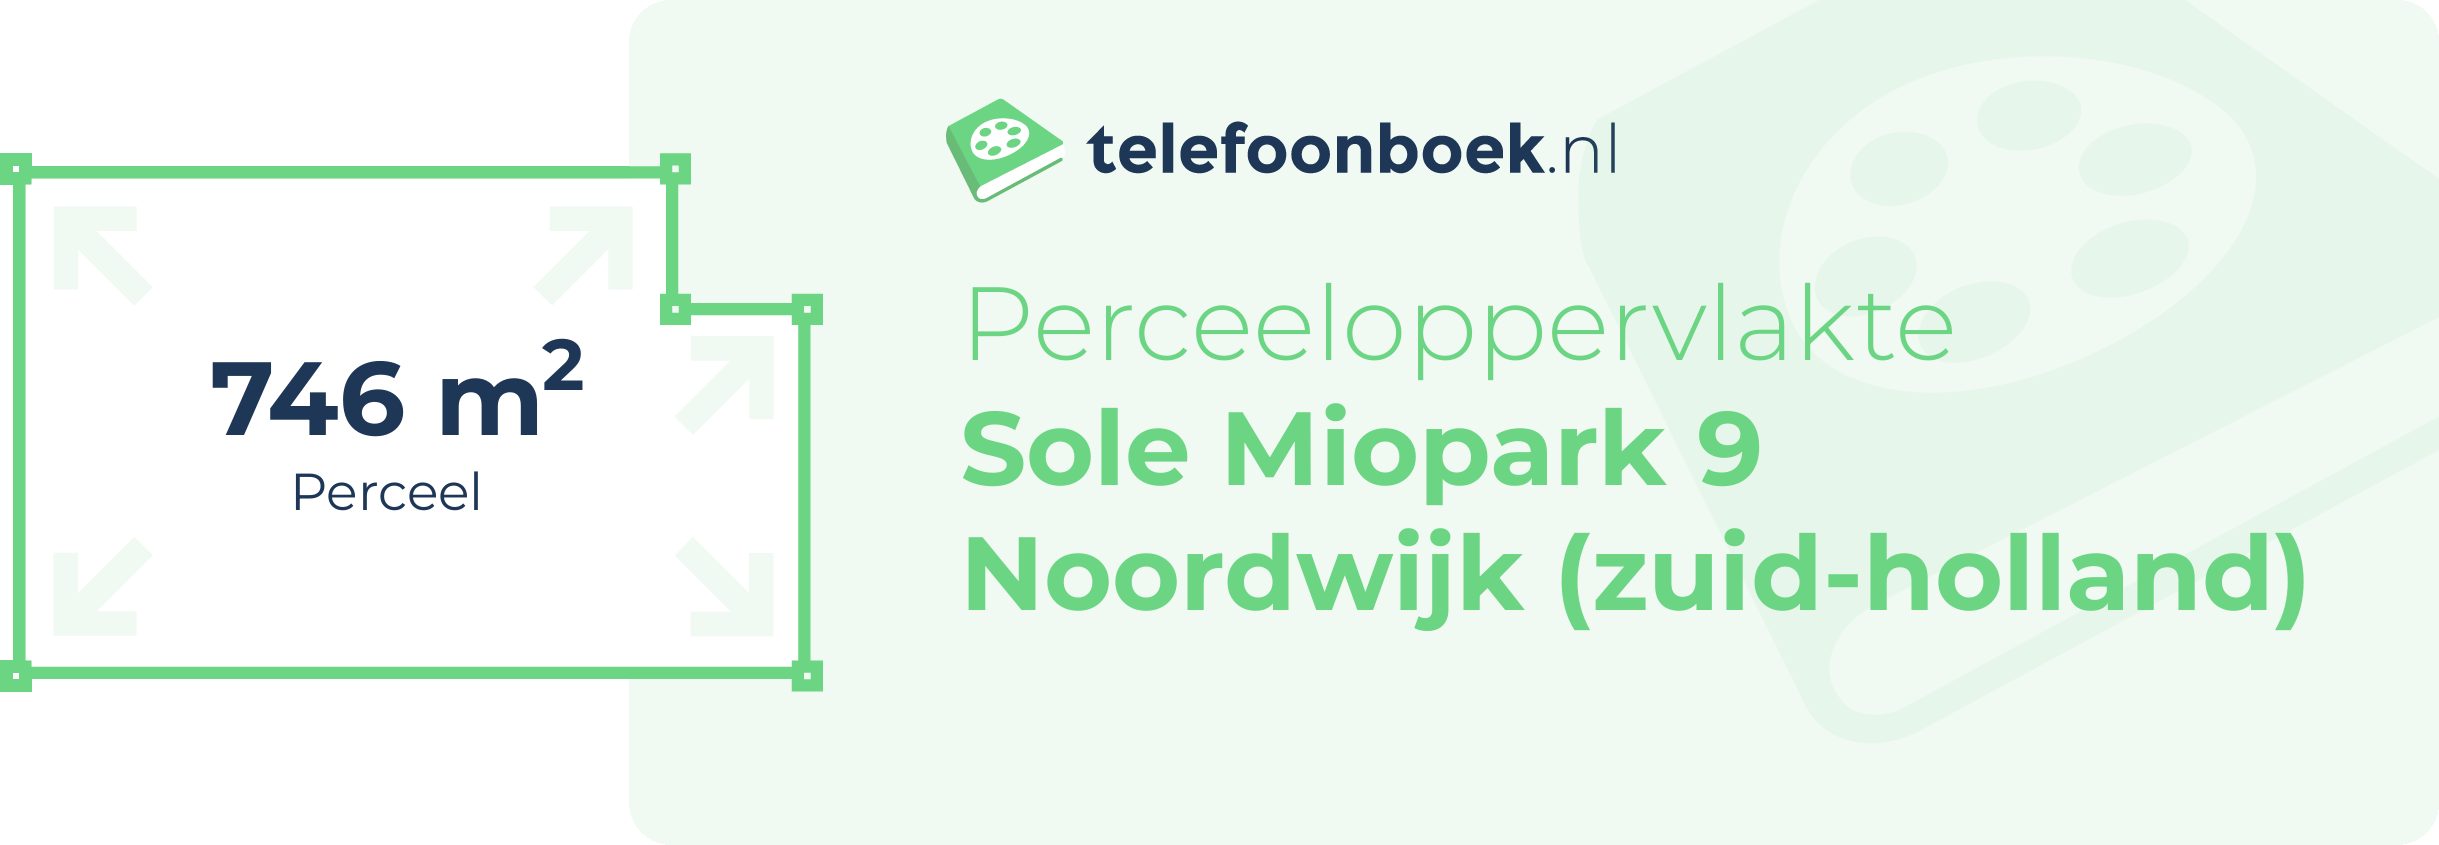 Perceeloppervlakte Sole Miopark 9 Noordwijk (Zuid-Holland)